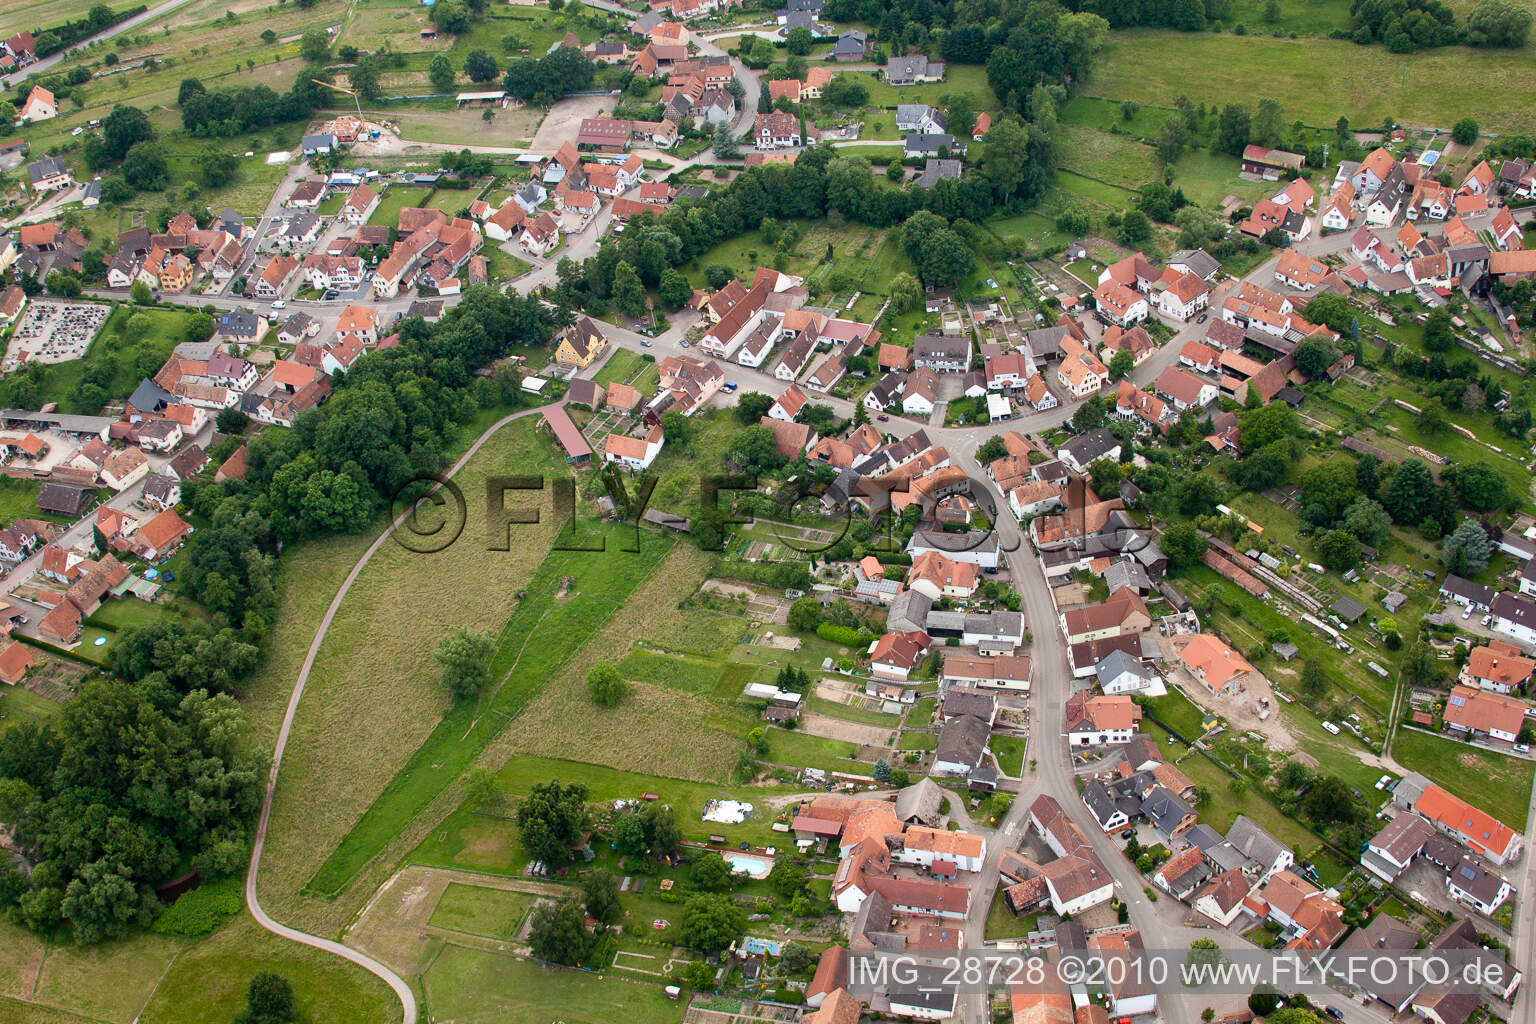 Drone image of Scheibenhardt in Scheibenhard in the state Bas-Rhin, France